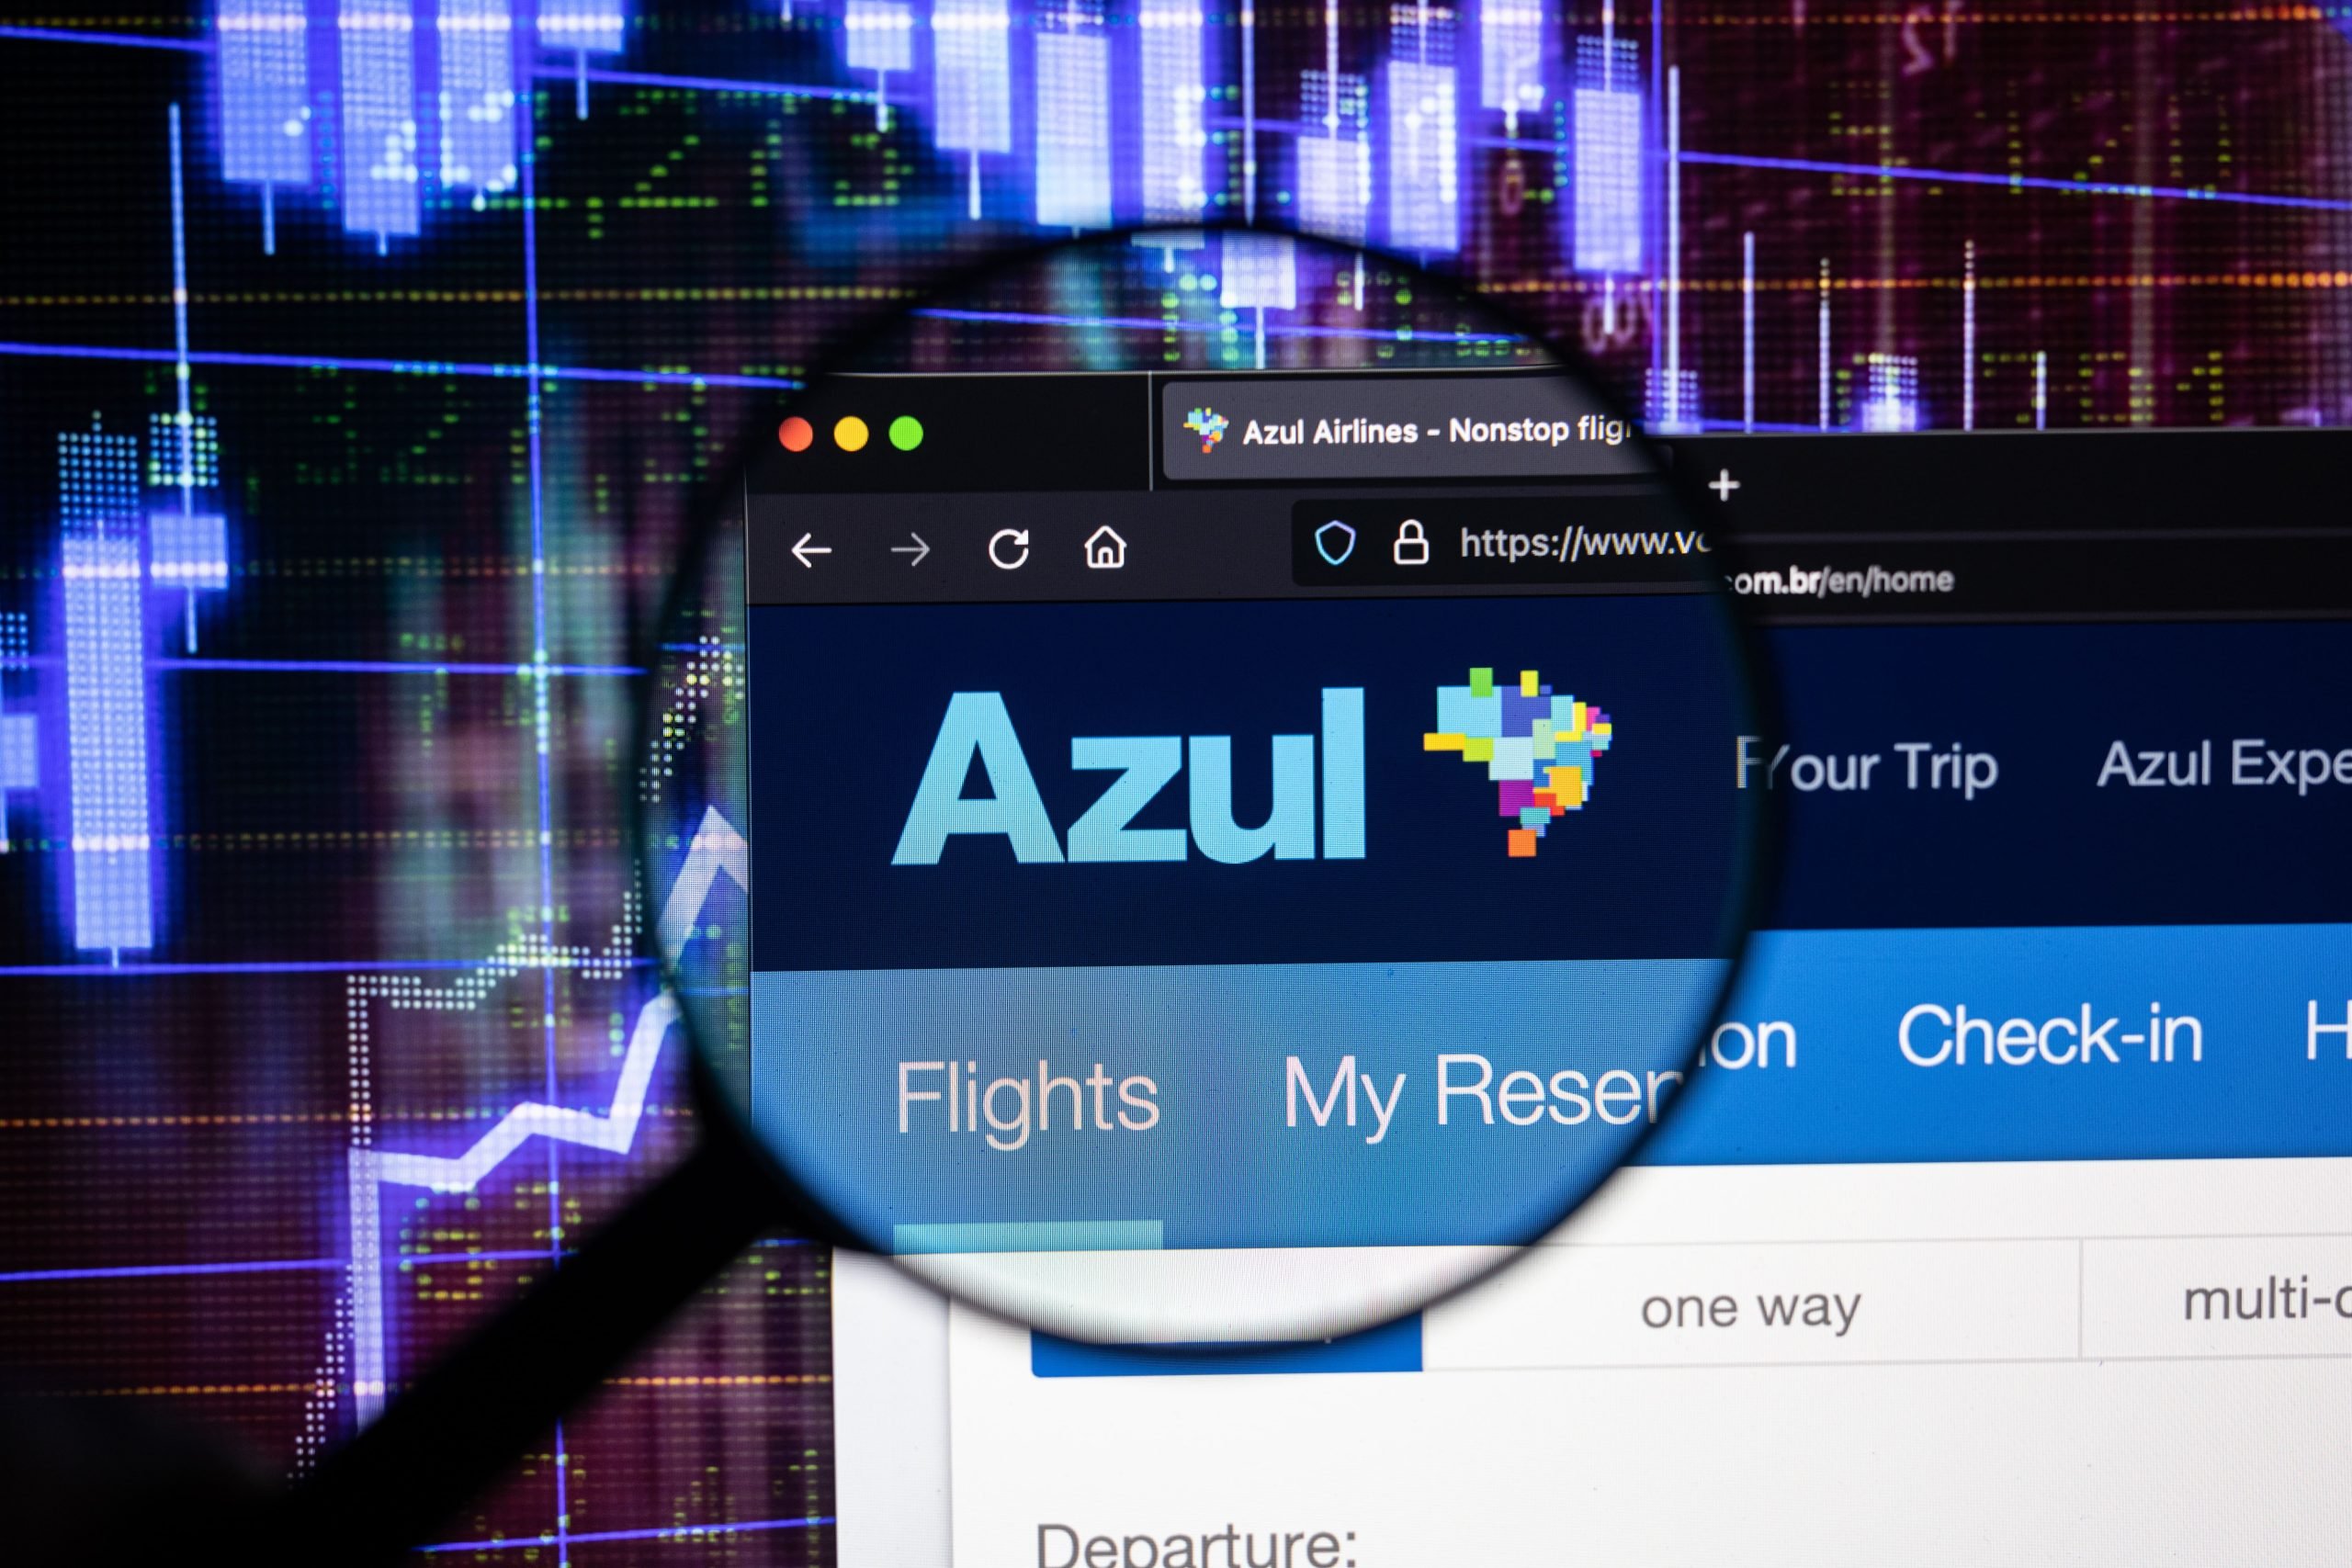 Logotipo de la aerolínea Azul en un sitio web con desarrollos borrosos del mercado de valores en el fondo, visto en una pantalla de computadora a través de una lupa.